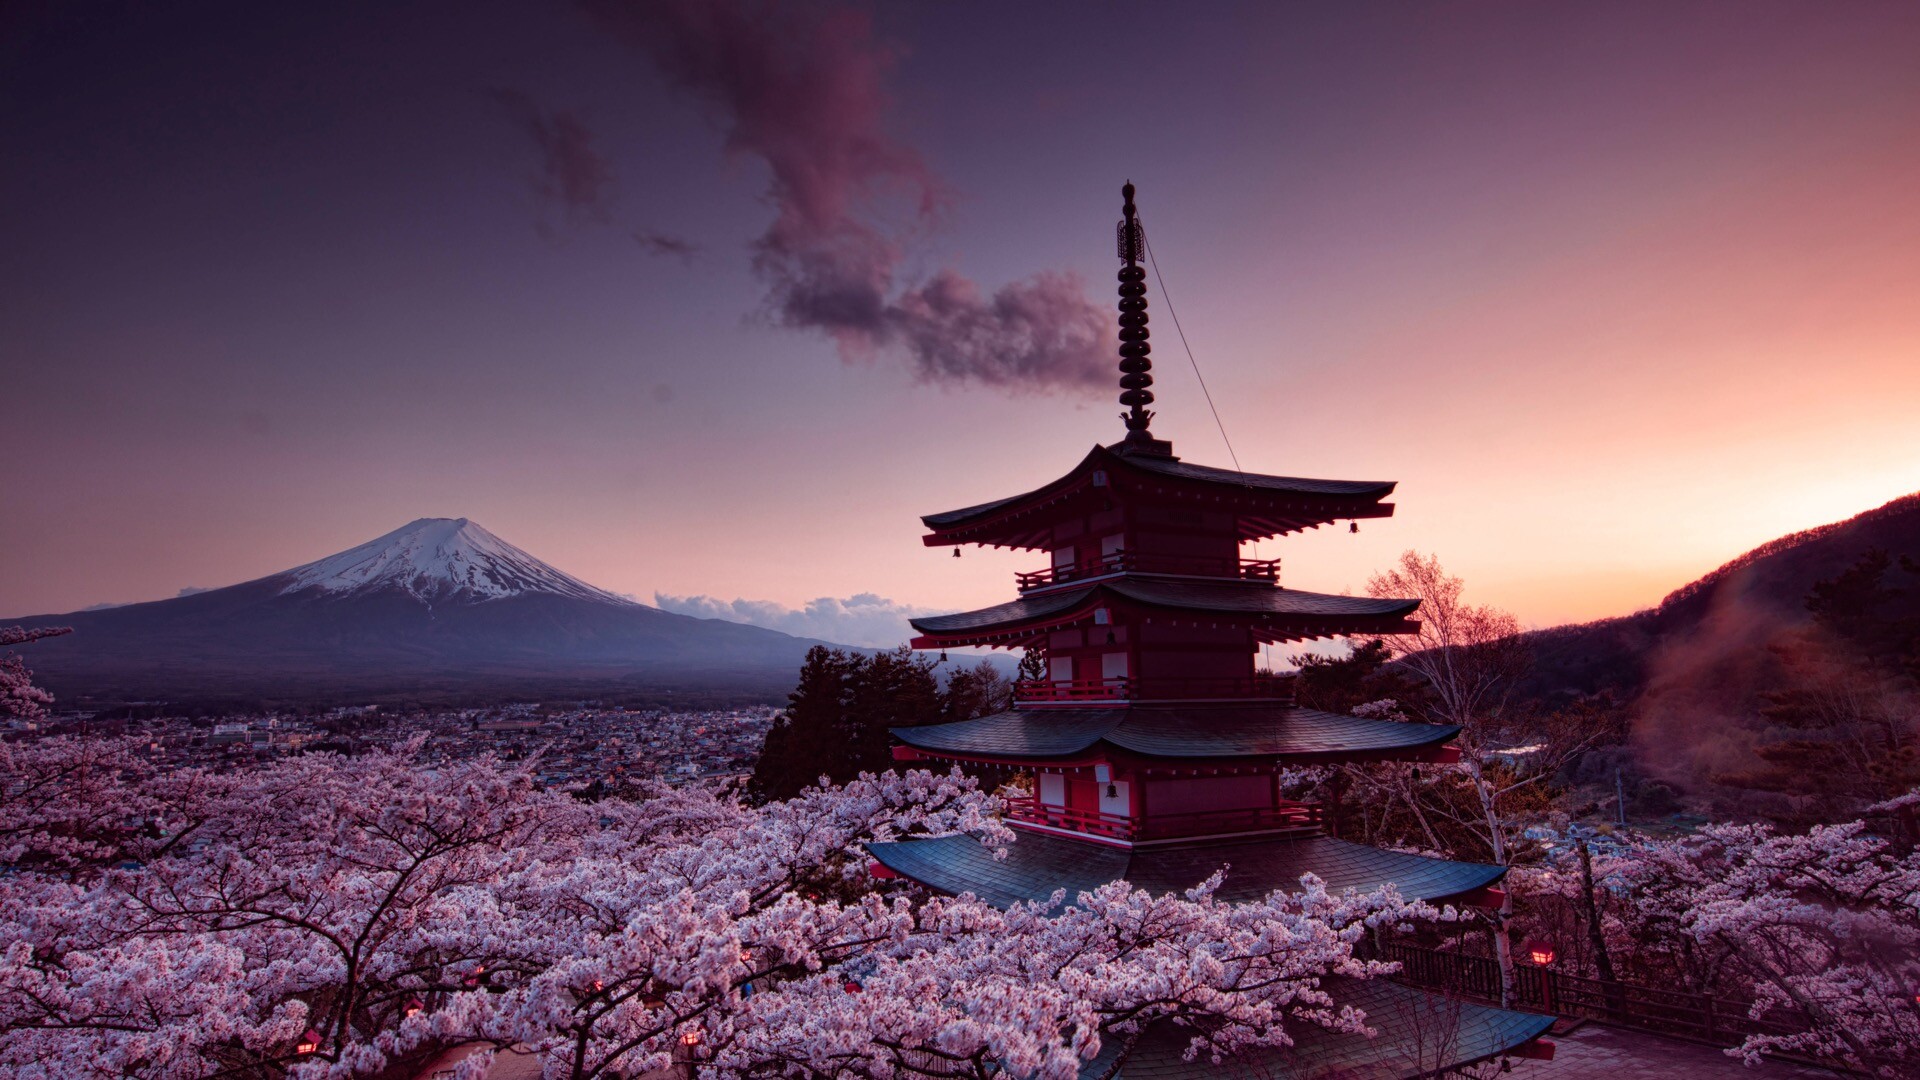 靓丽的日本风景高清壁纸